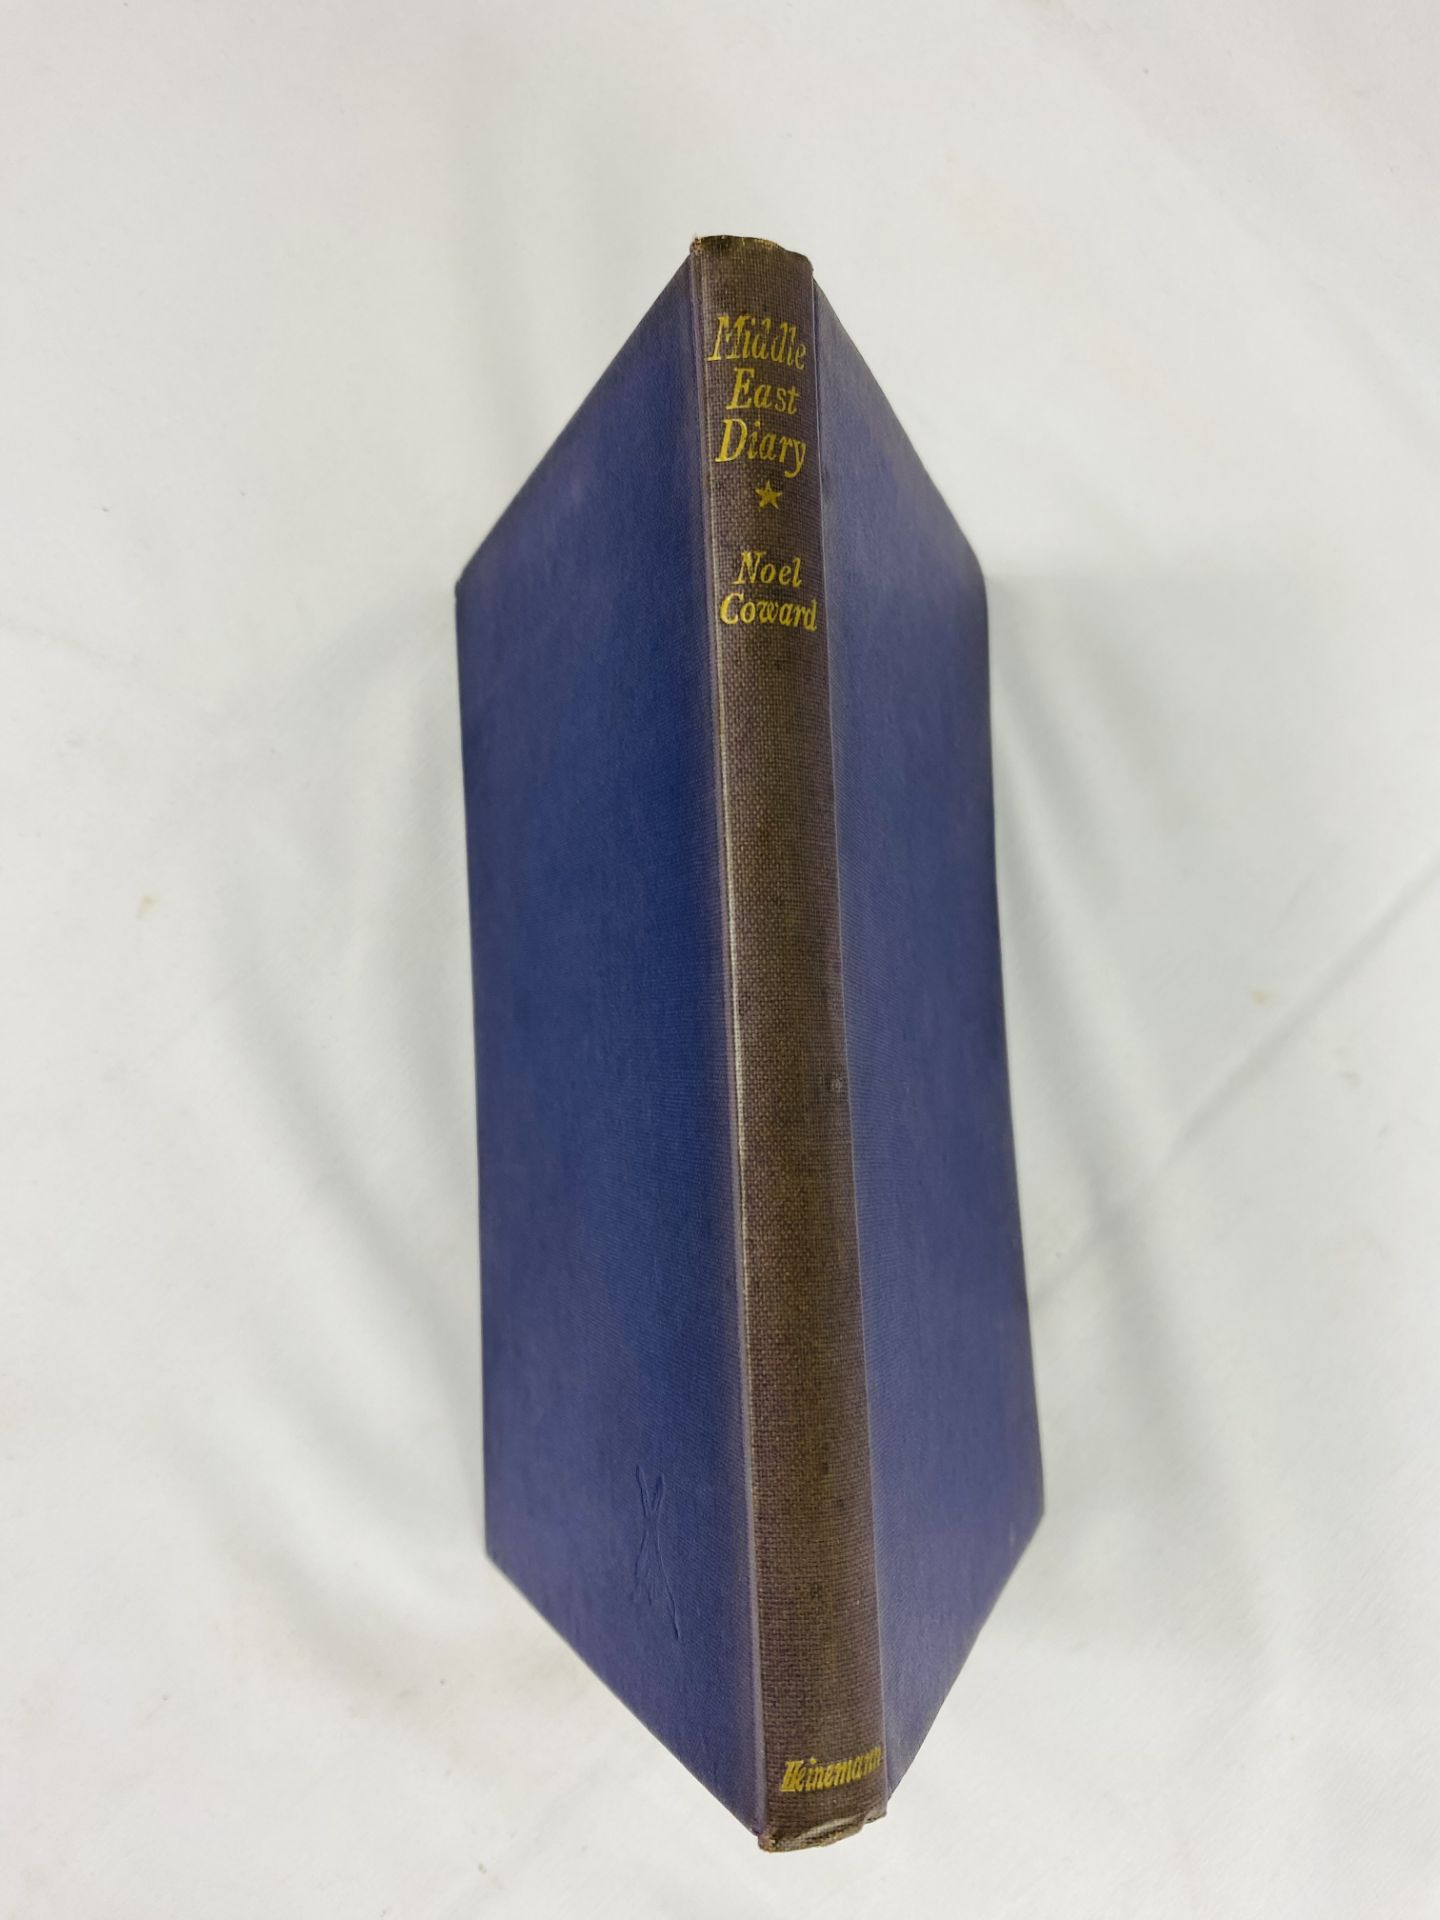 Noel Coward, Middle East Diary, first edition, William Heinemann Ltd, 1944 - Bild 4 aus 7